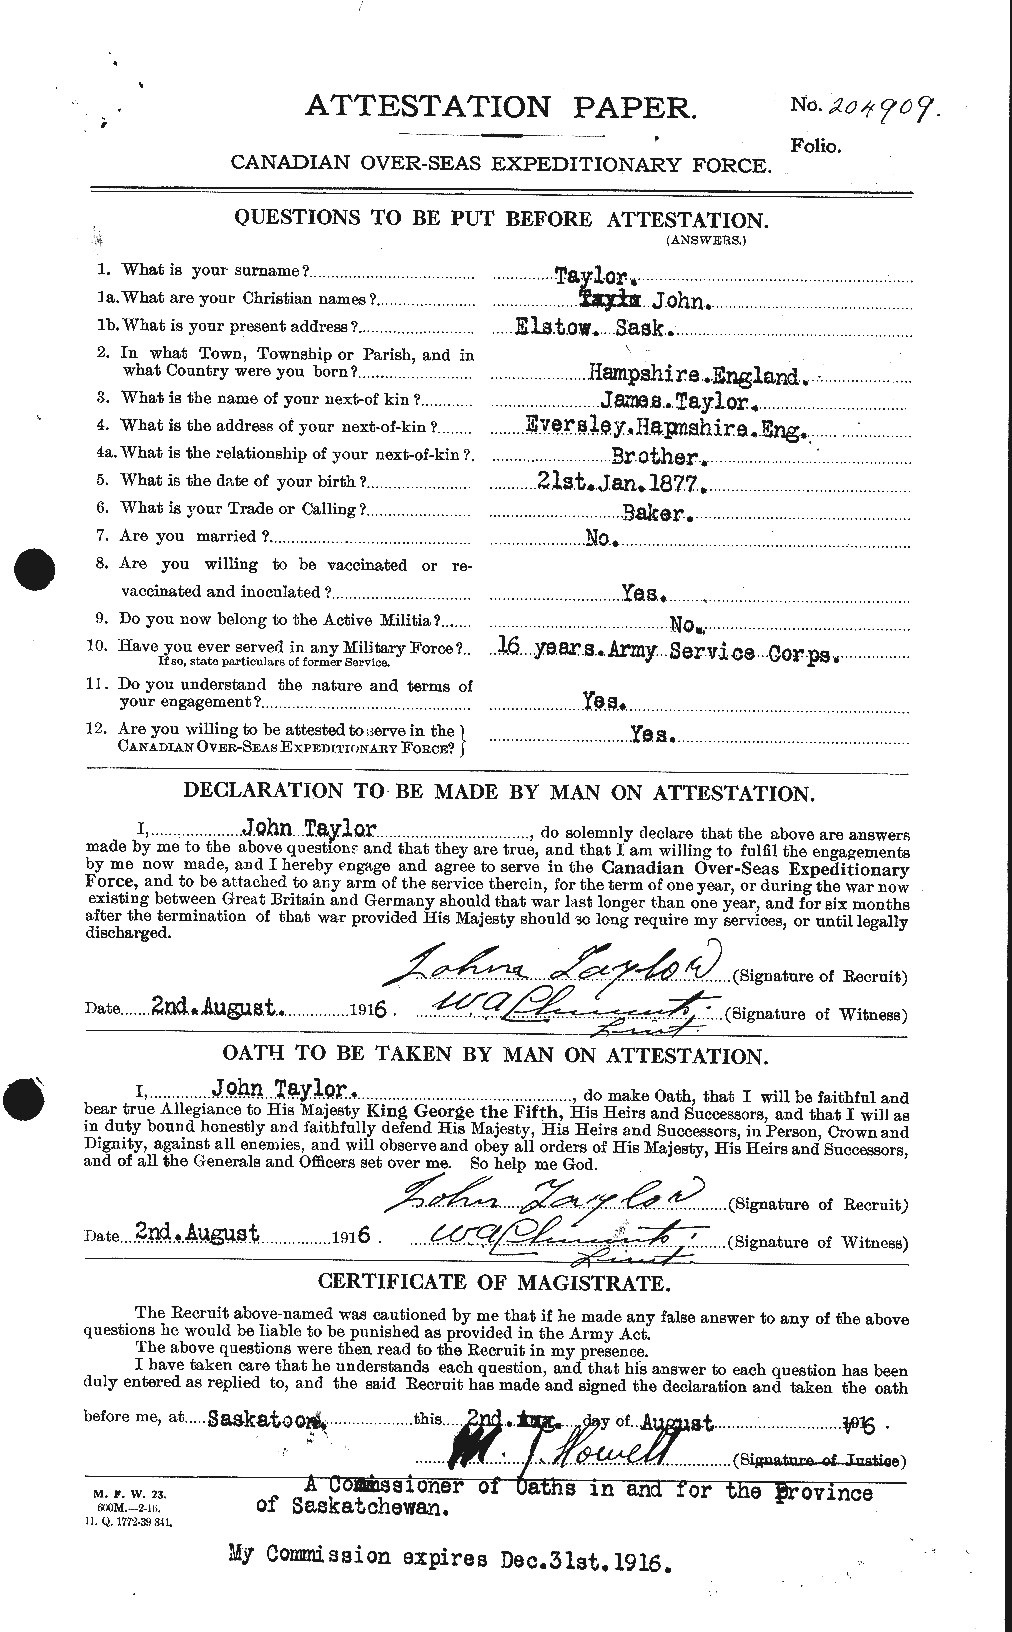 Dossiers du Personnel de la Première Guerre mondiale - CEC 627029a